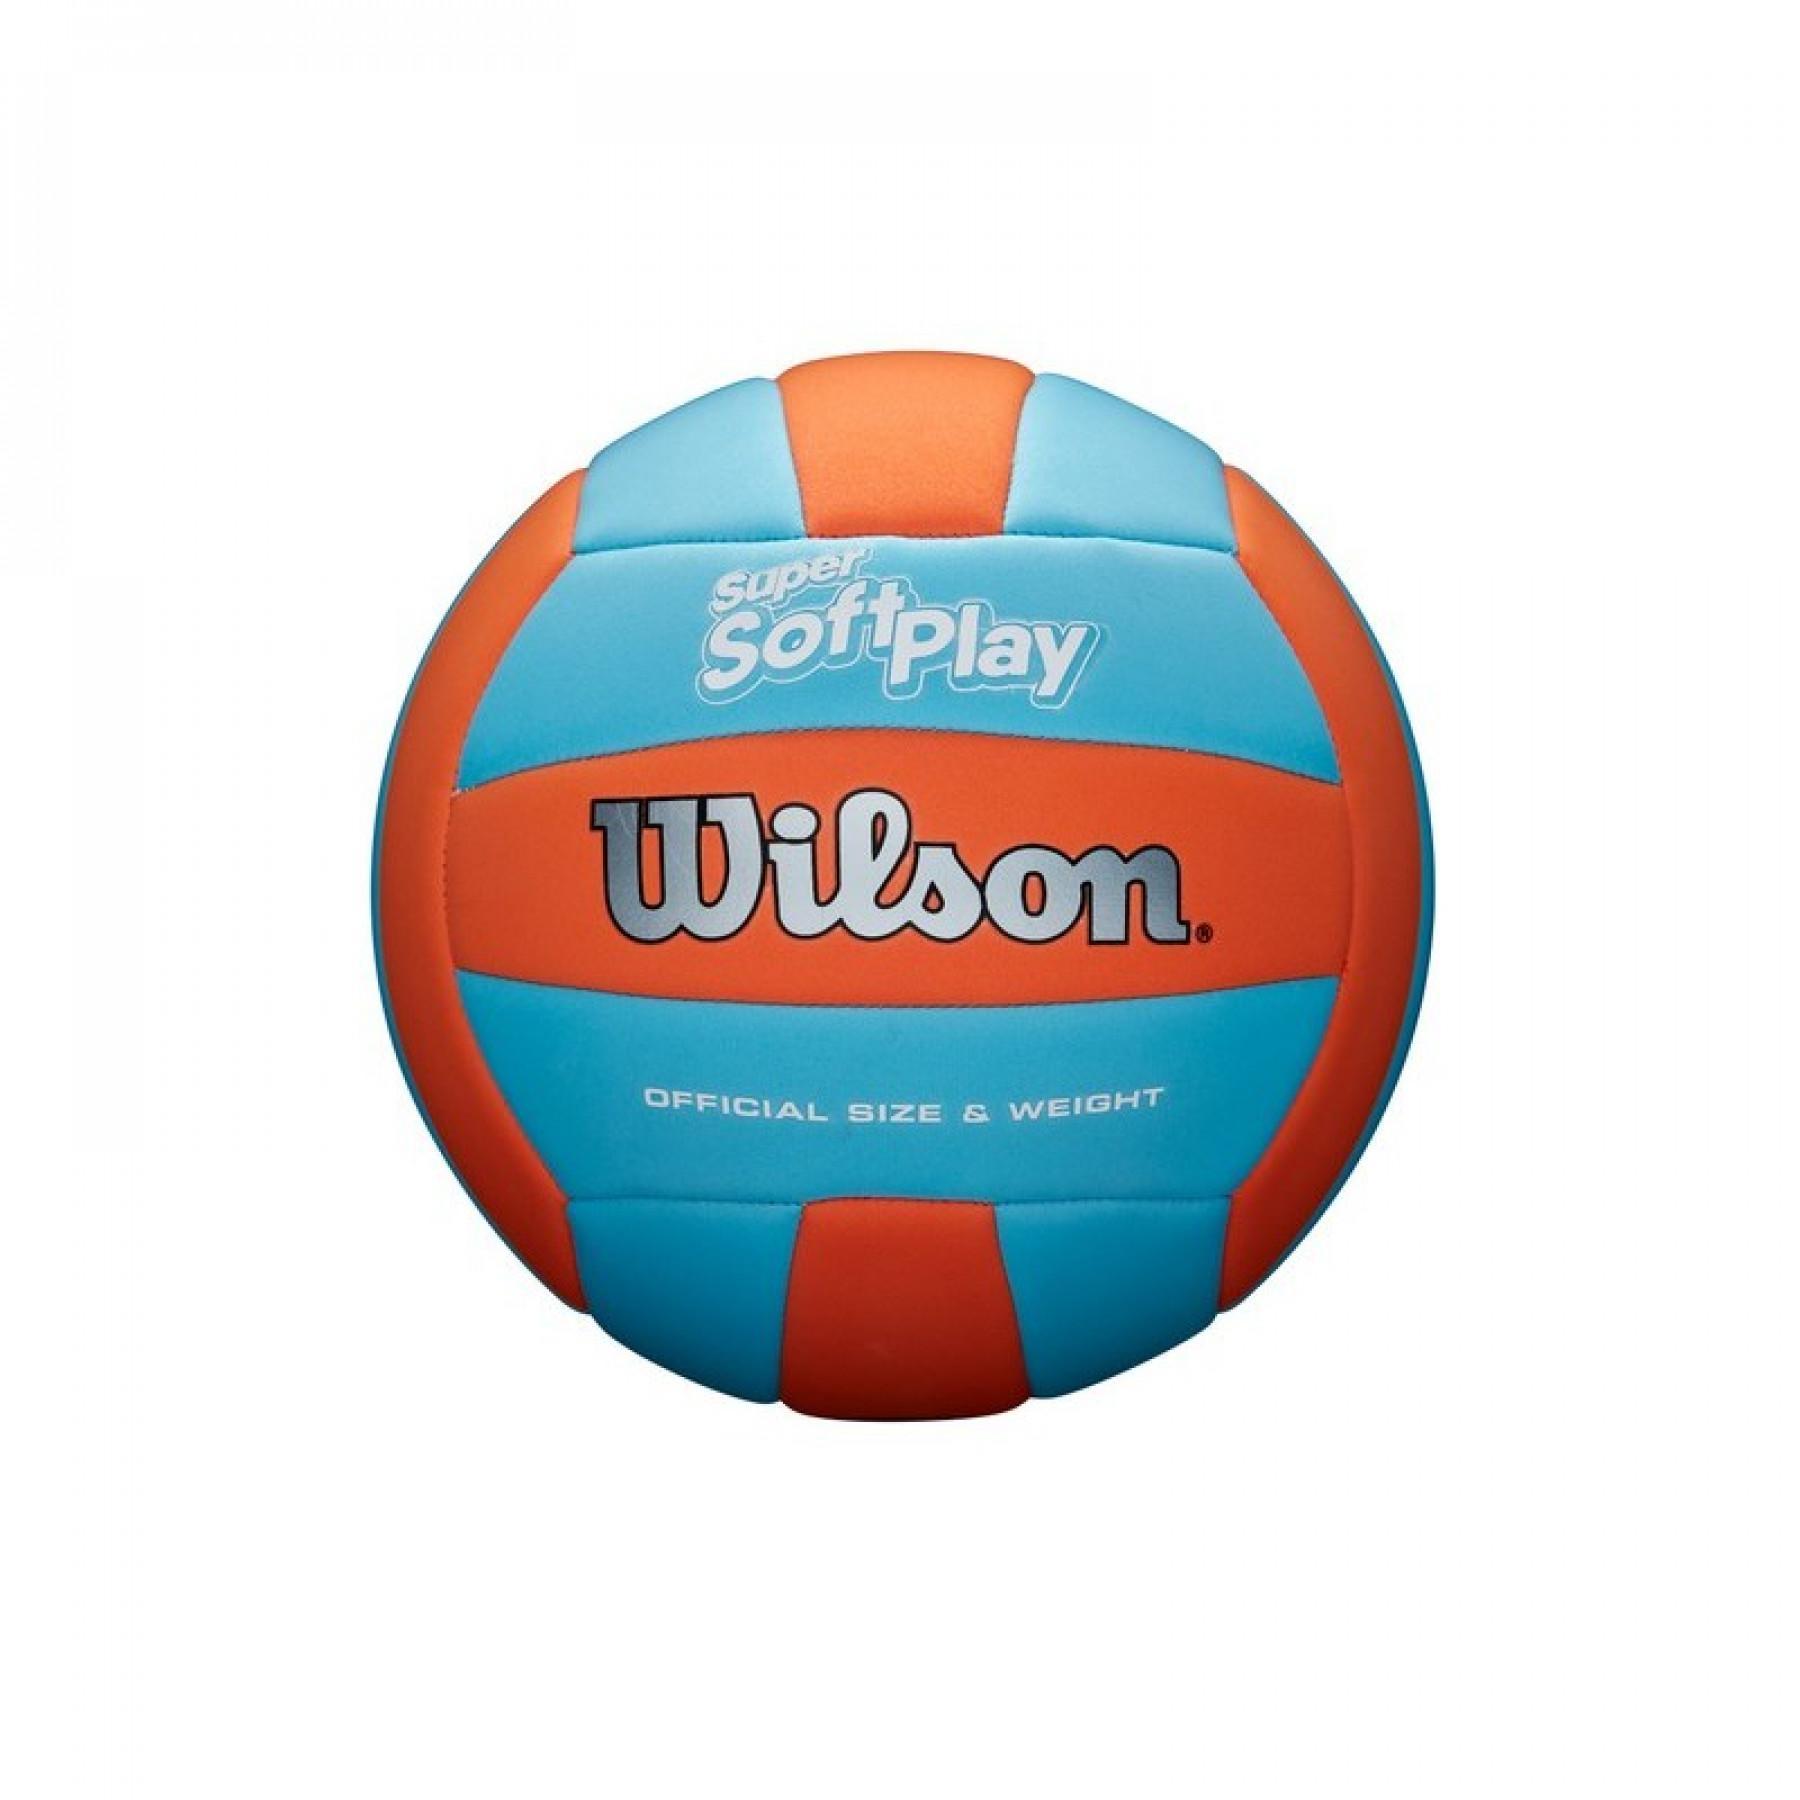 Beachvolleyball Wilson Super Soft Play